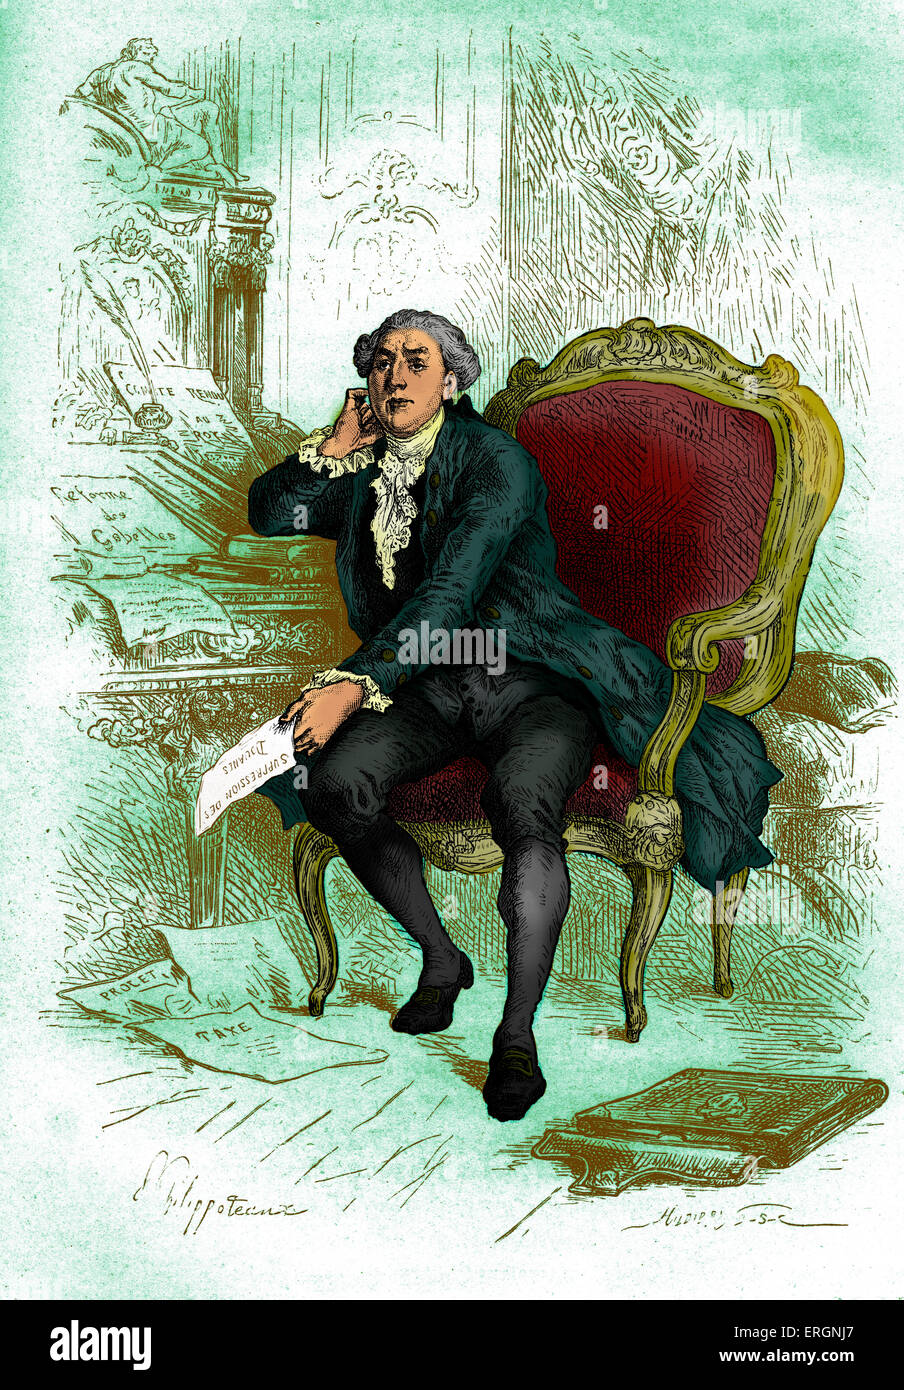 Jacques Necker, banquier suisse et Ministre des finances sous Louis XVI de France. Sa politique économique axée sur la rigueur et Banque D'Images